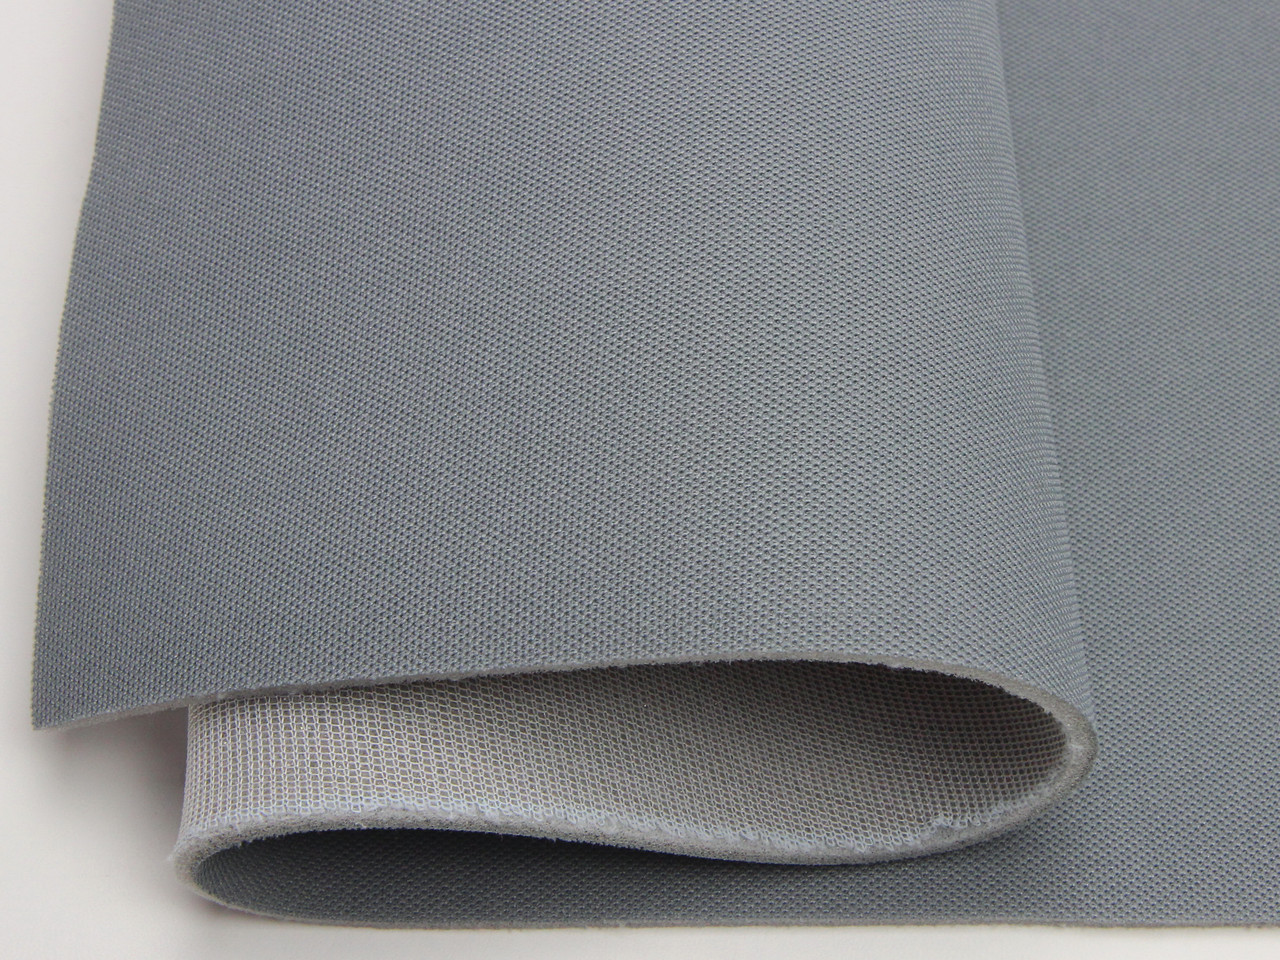 Авто ткань для потолка, серая с холодным оттенком (текстура) RASEL 38, на поролоне 4мм с сеткой, ширина 1.70м (Турция) детальная фотка